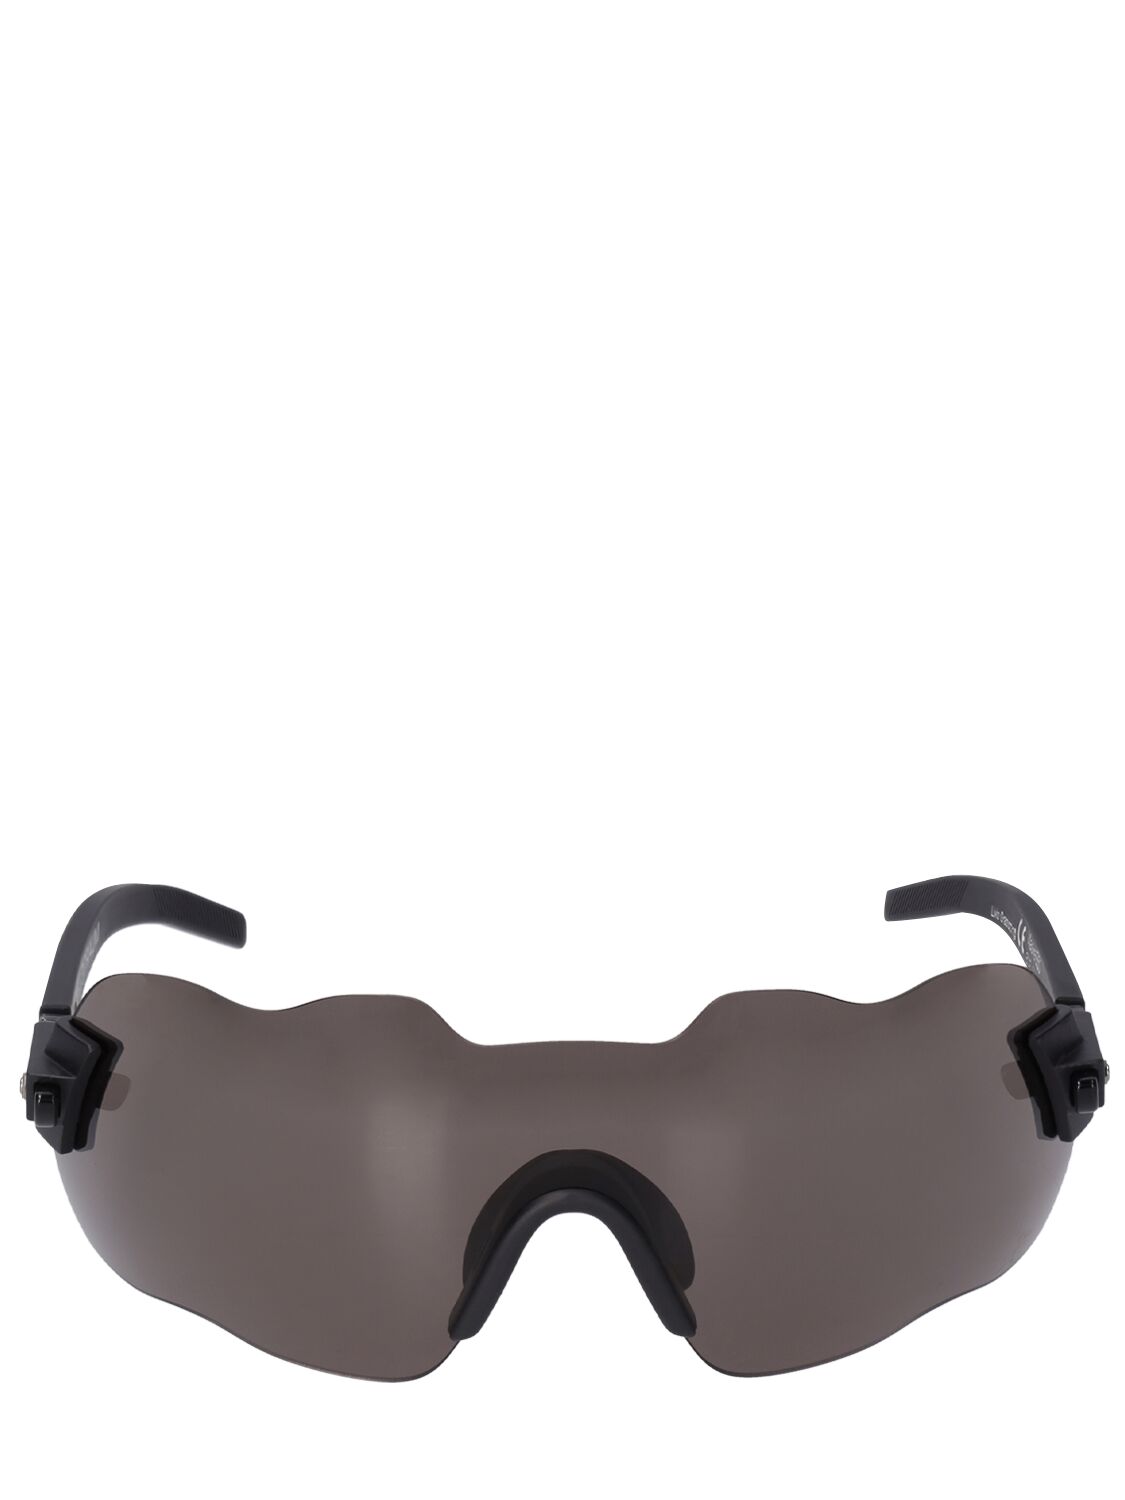 E50 Mask Sunglasses